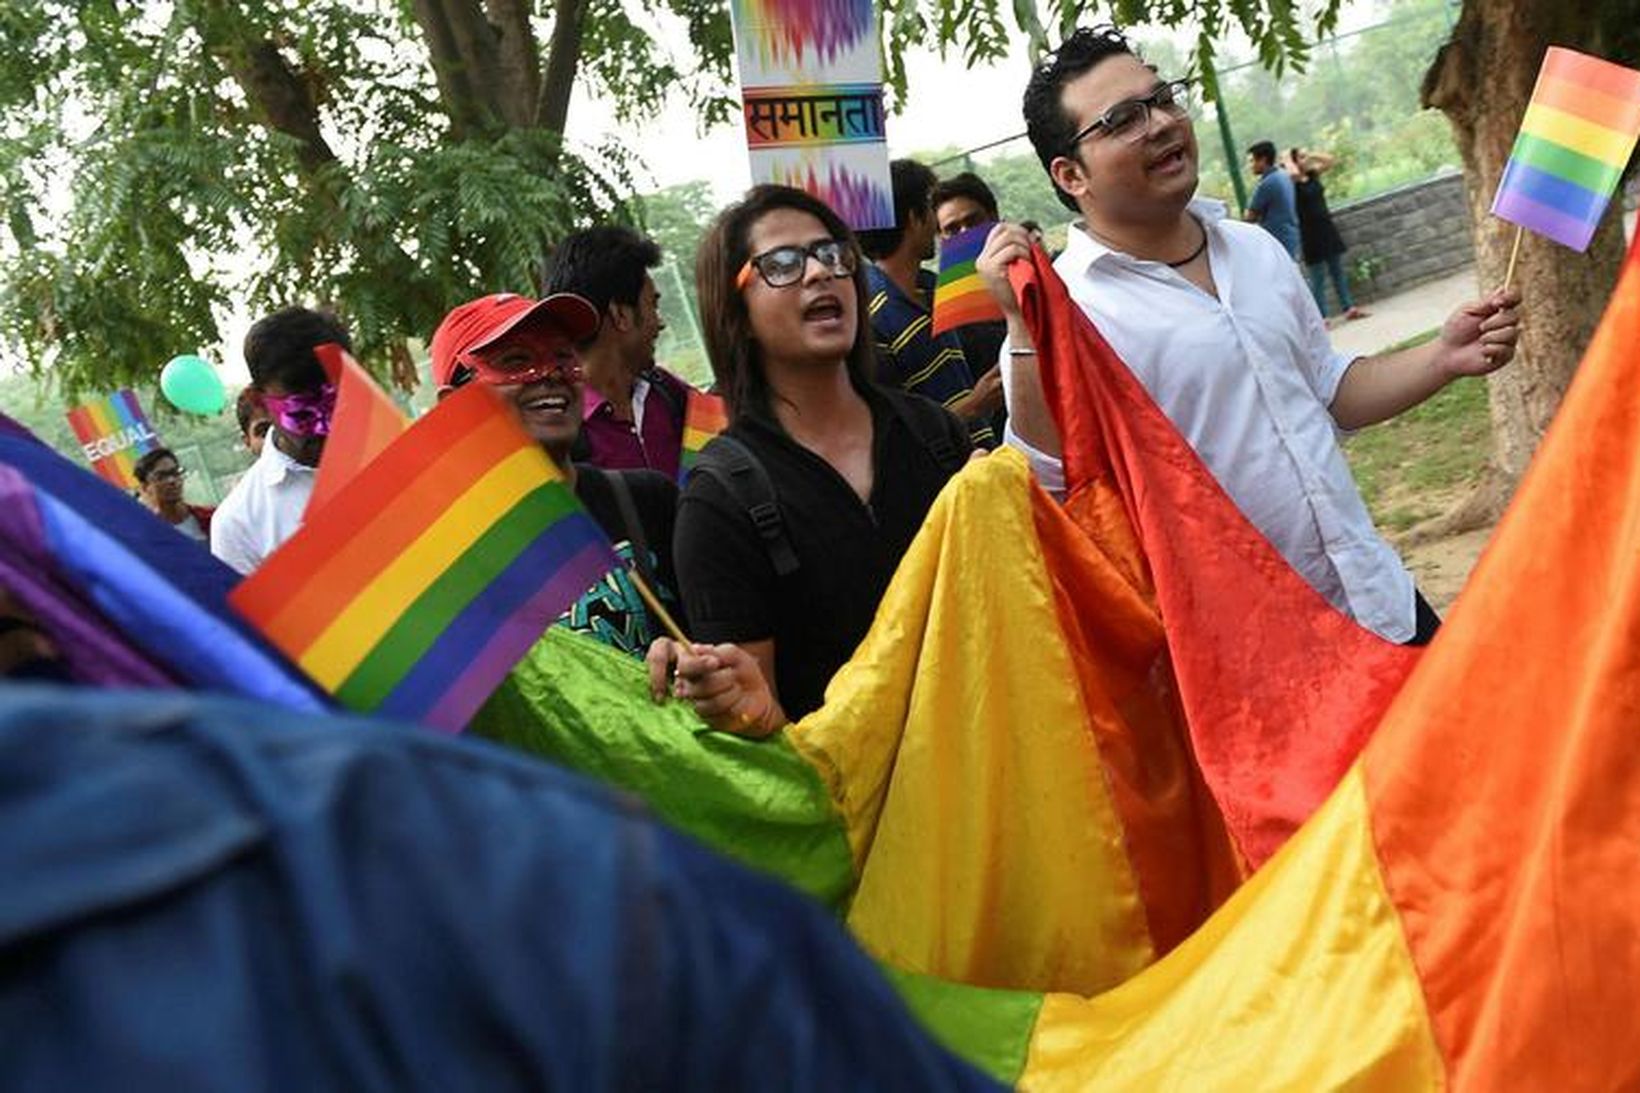 Baráttufólk fyrir réttindum LGBT í Nýju-Delí á Indlandi í vikunni.